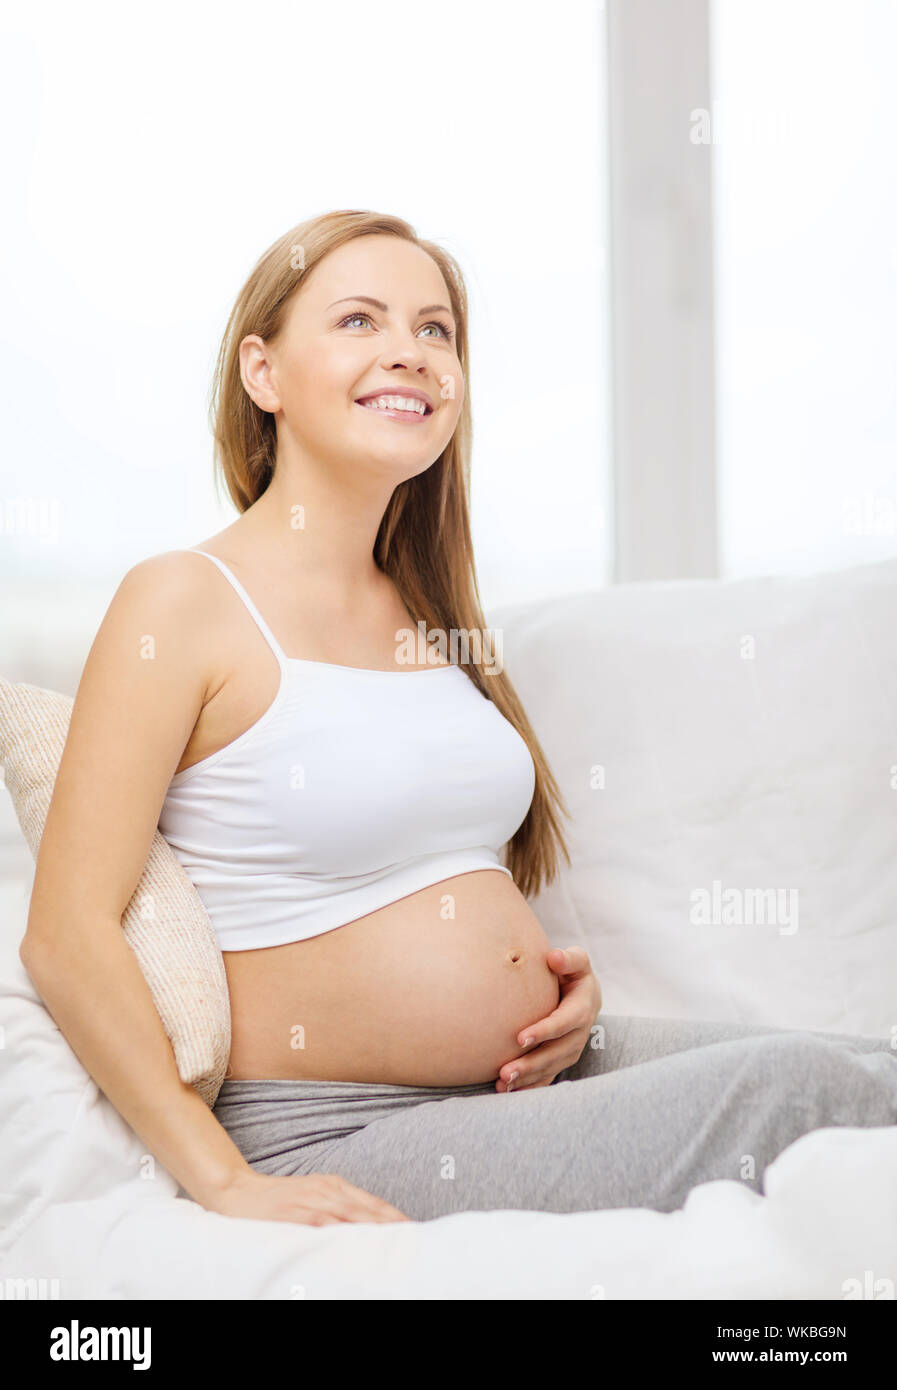 El embarazo, la maternidad y el concepto de la felicidad - feliz mujer embarazada sentada en el sofá y tocar su vientre y soñar Fotografía de stock Alamy